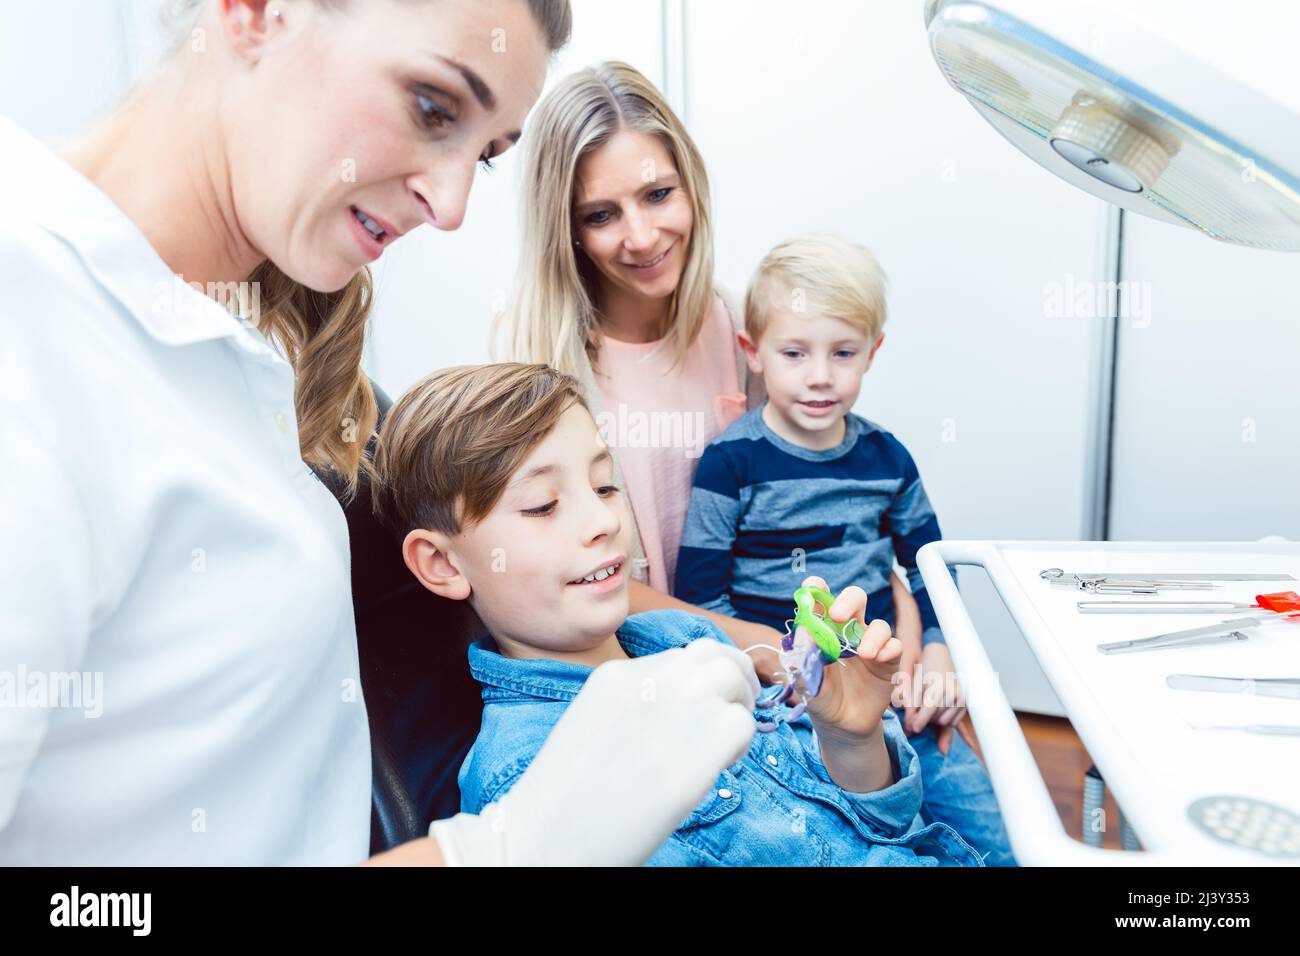 Dentista y niño paciente eligiendo los aparatos dentales en la clínica Foto de stock